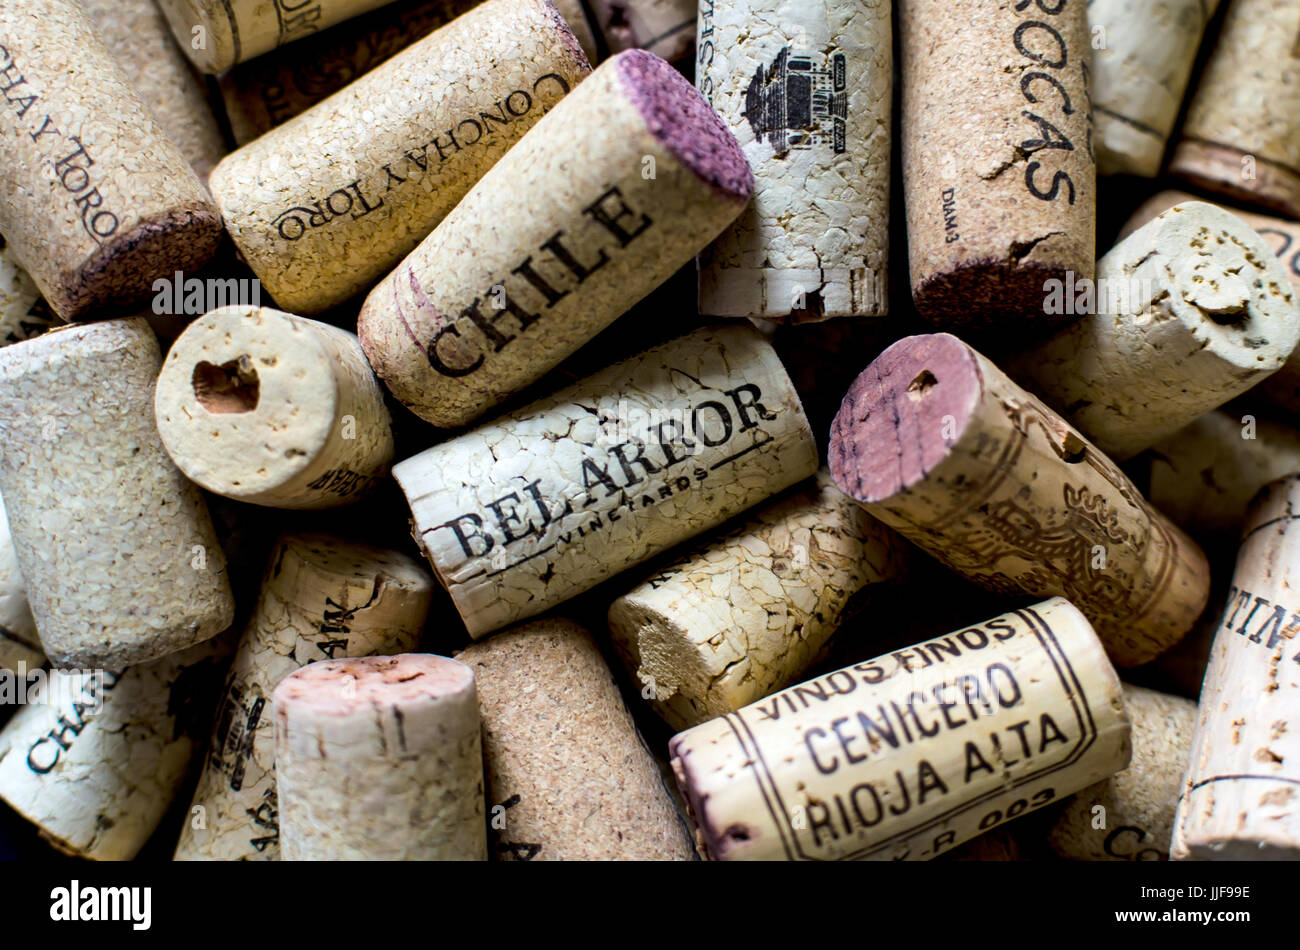 Bouchons utilisés dans une pile, à partir de différentes bouteilles de vin. Banque D'Images